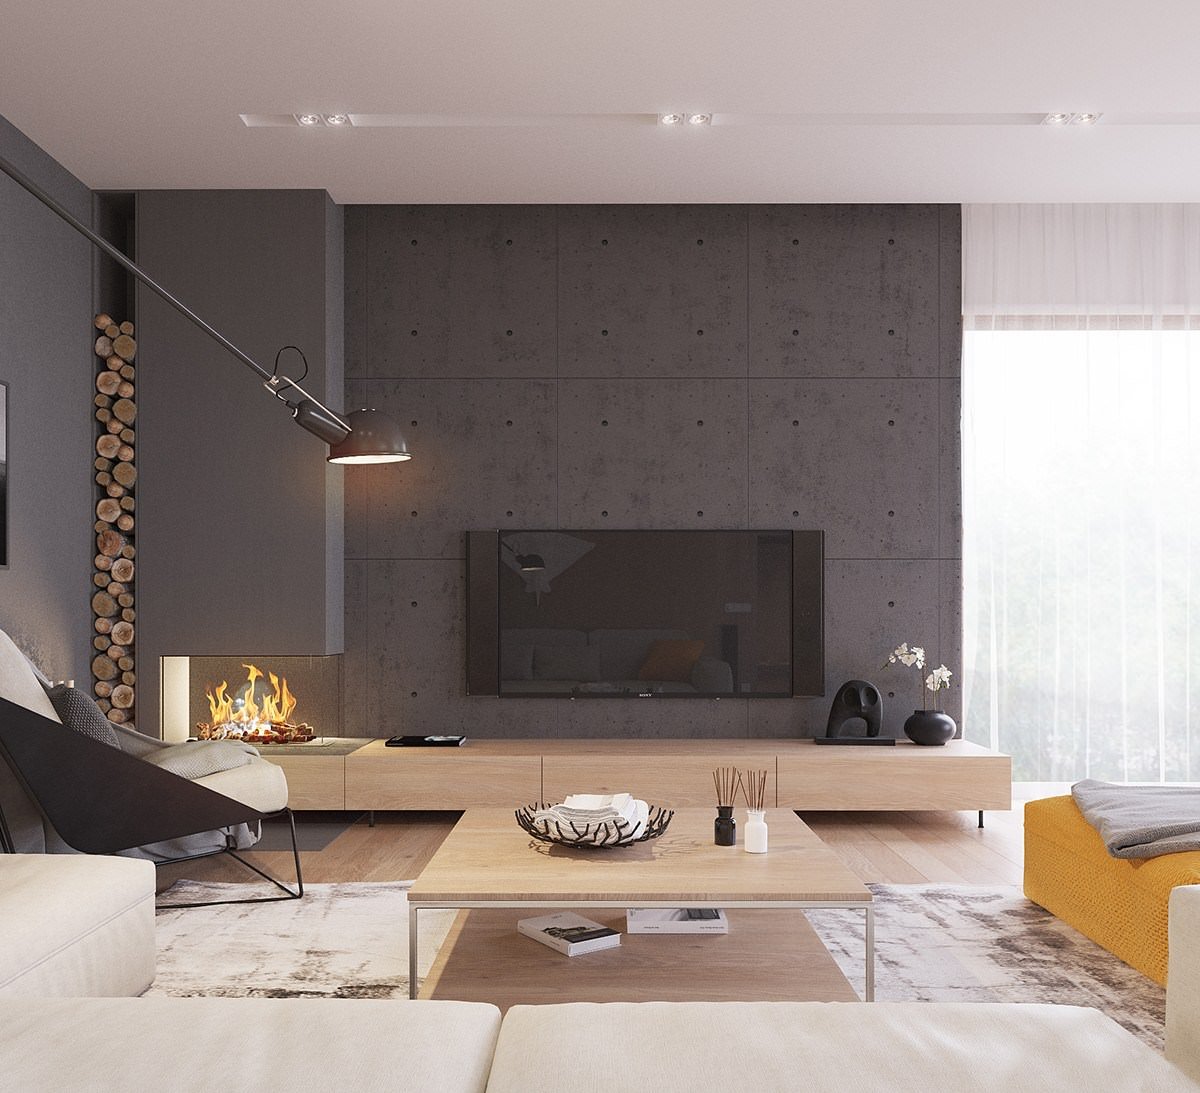 Design salotto scandinavo moderno con muro in cemento colorato che dà un tocco di stile industriale alla casa - idee arredamento soggiorno stile nordico